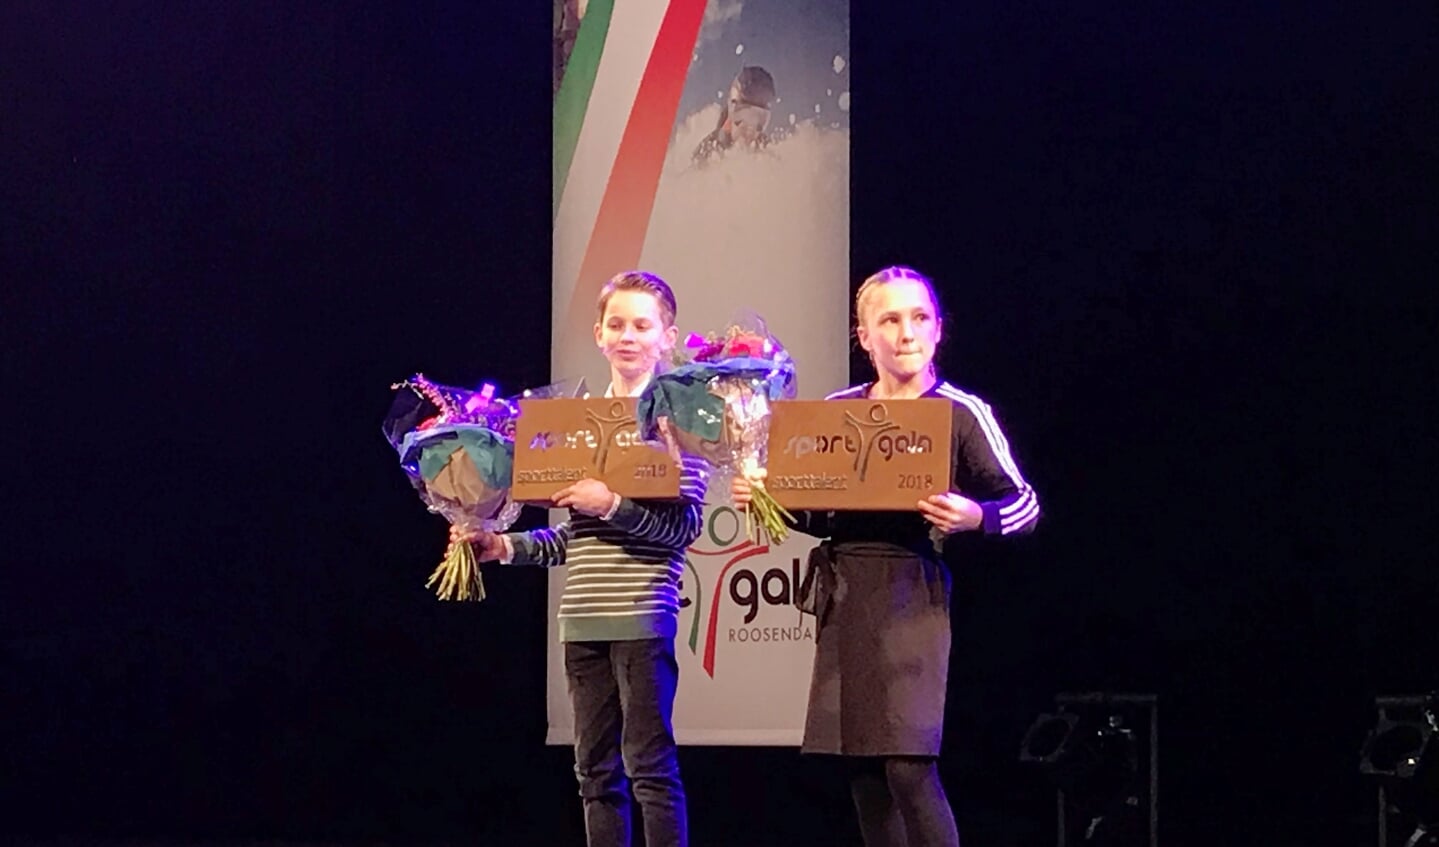 Winnaars aanmoedigingsprijs Gijs Franken (li) en Ruby de Bont (re)